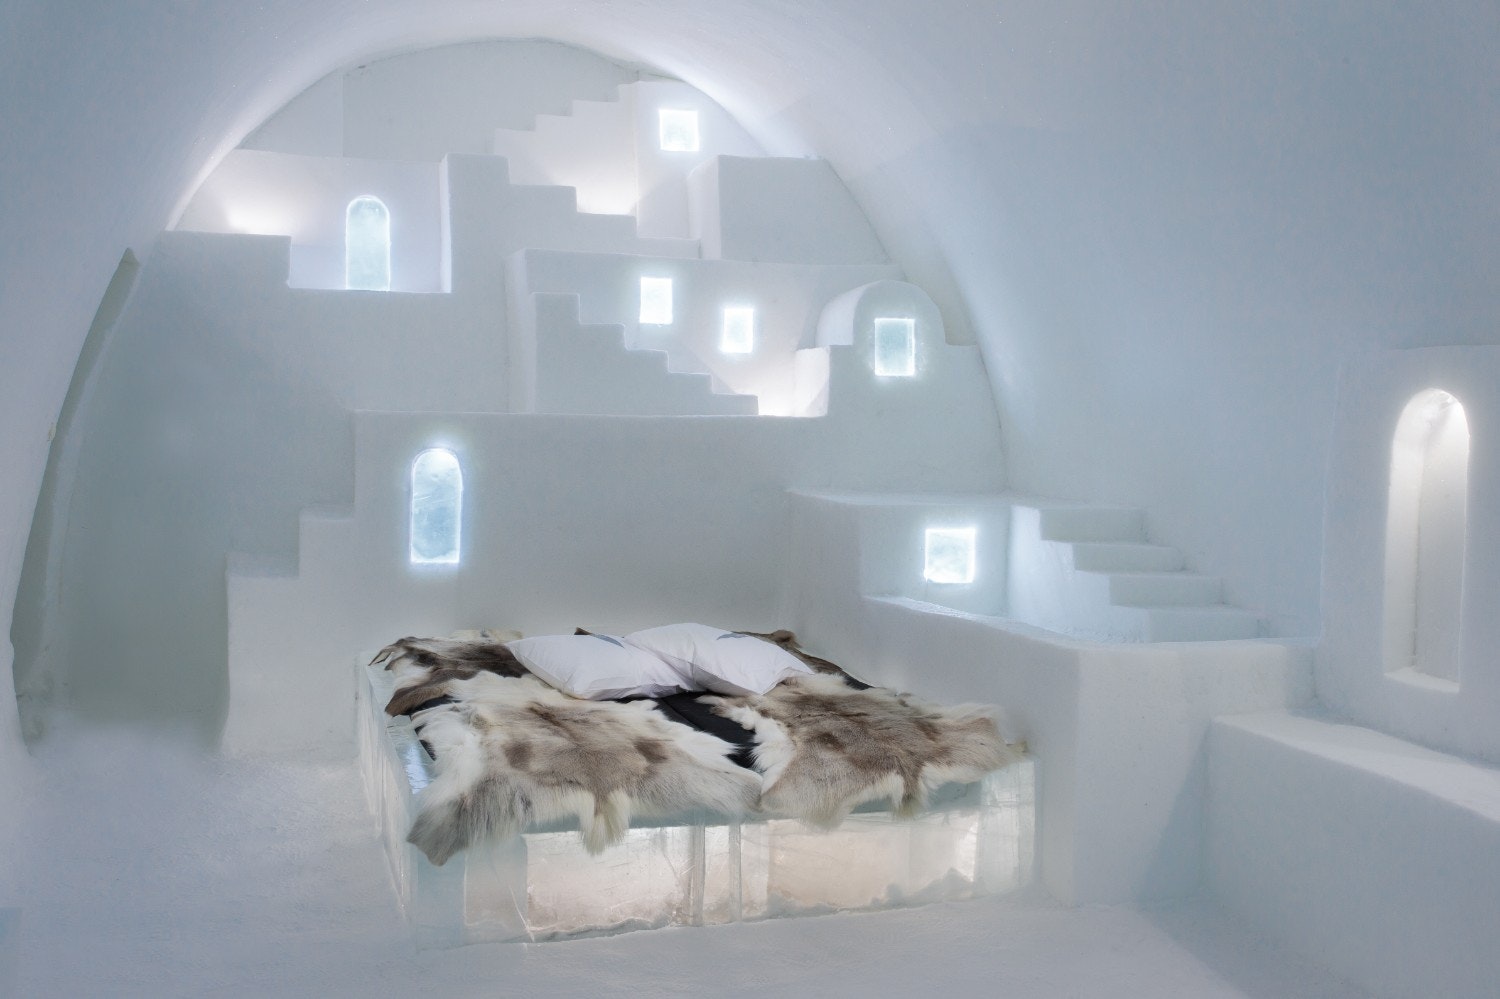 White Santorini desjgn at Icehotel 30.jpg